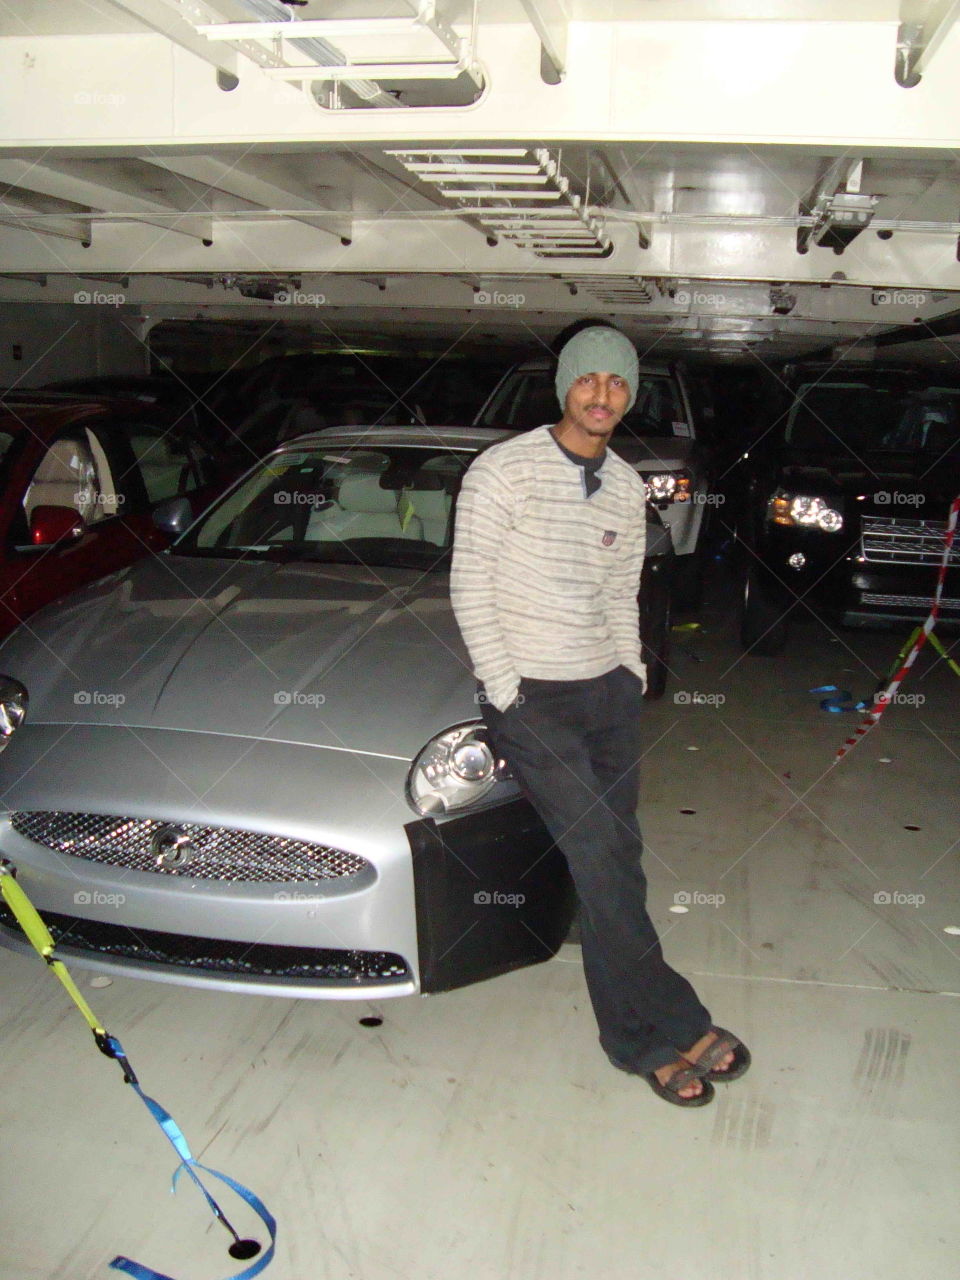 # It's me# jaguar# lashed on ship# ship's deck#